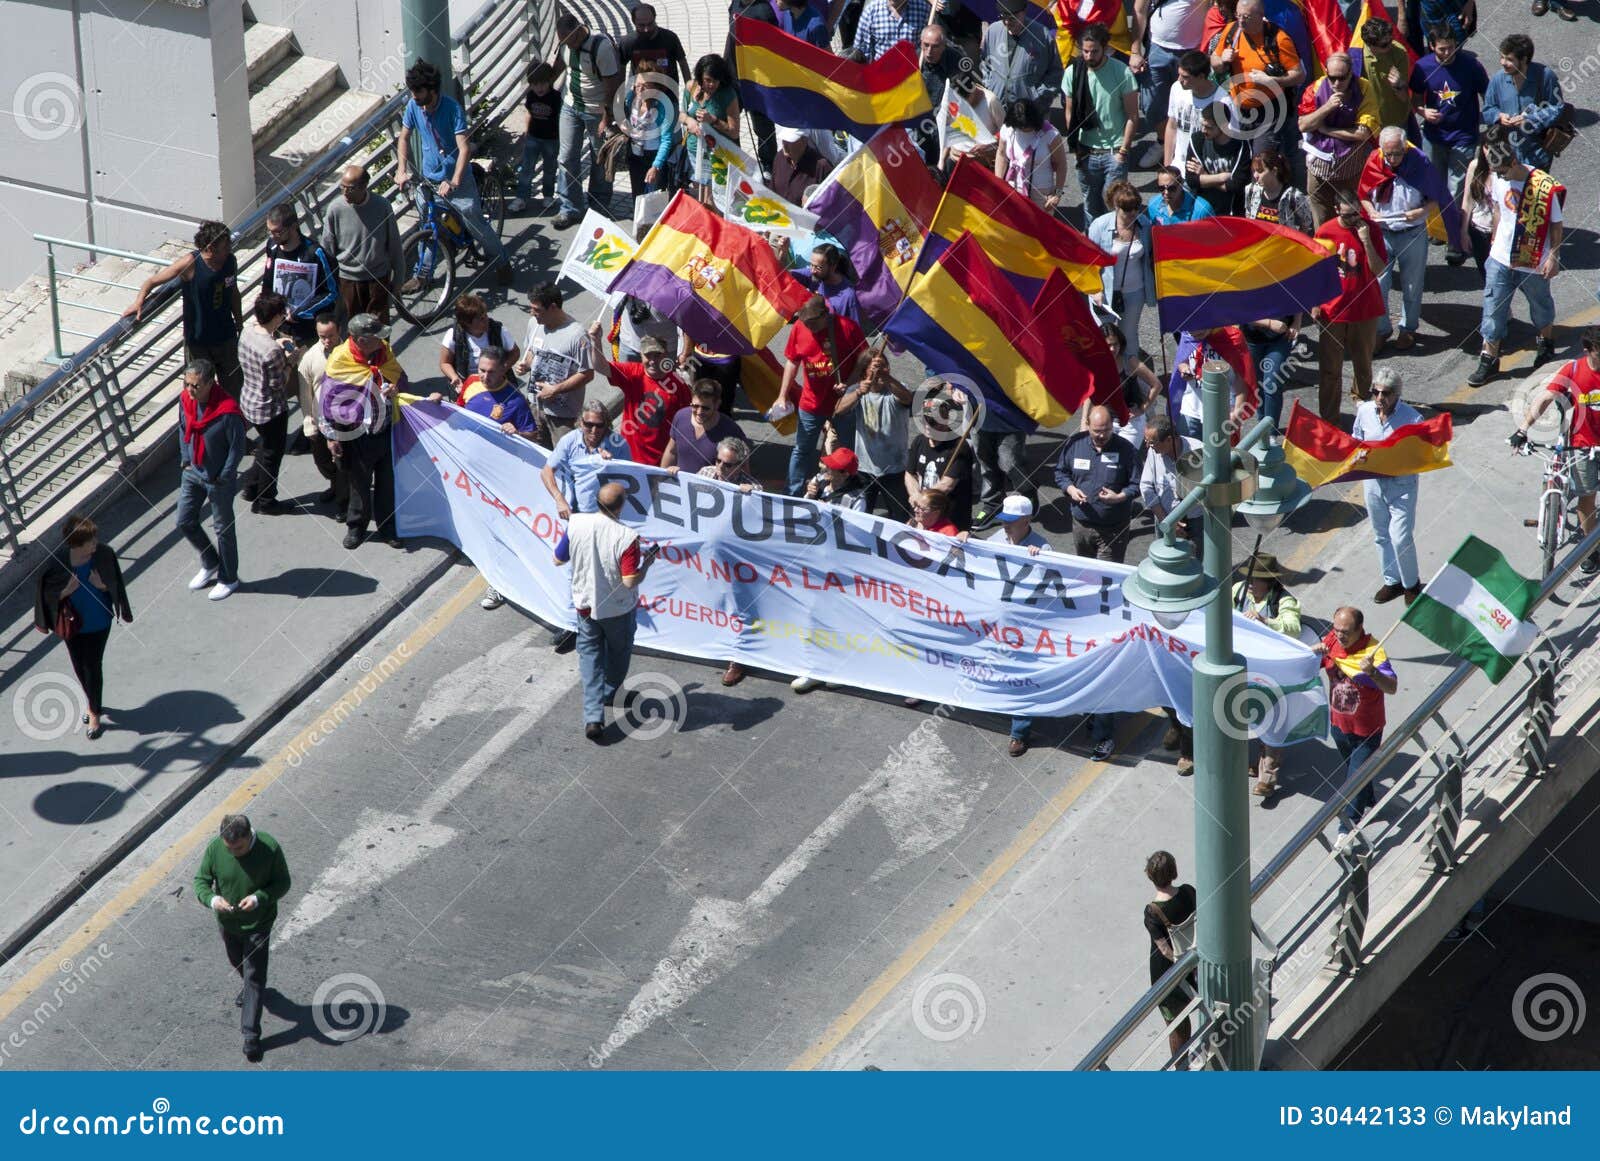 Malaga (Spagna), il 14 aprile 2013: Dimostrazioni contro monarchia nell'anniversario della Repubblica II. Parecchia gente partecipa alla dimostrazione a Malaga contro monarchia durante l'anniversario della Repubblica dello Spagnolo II